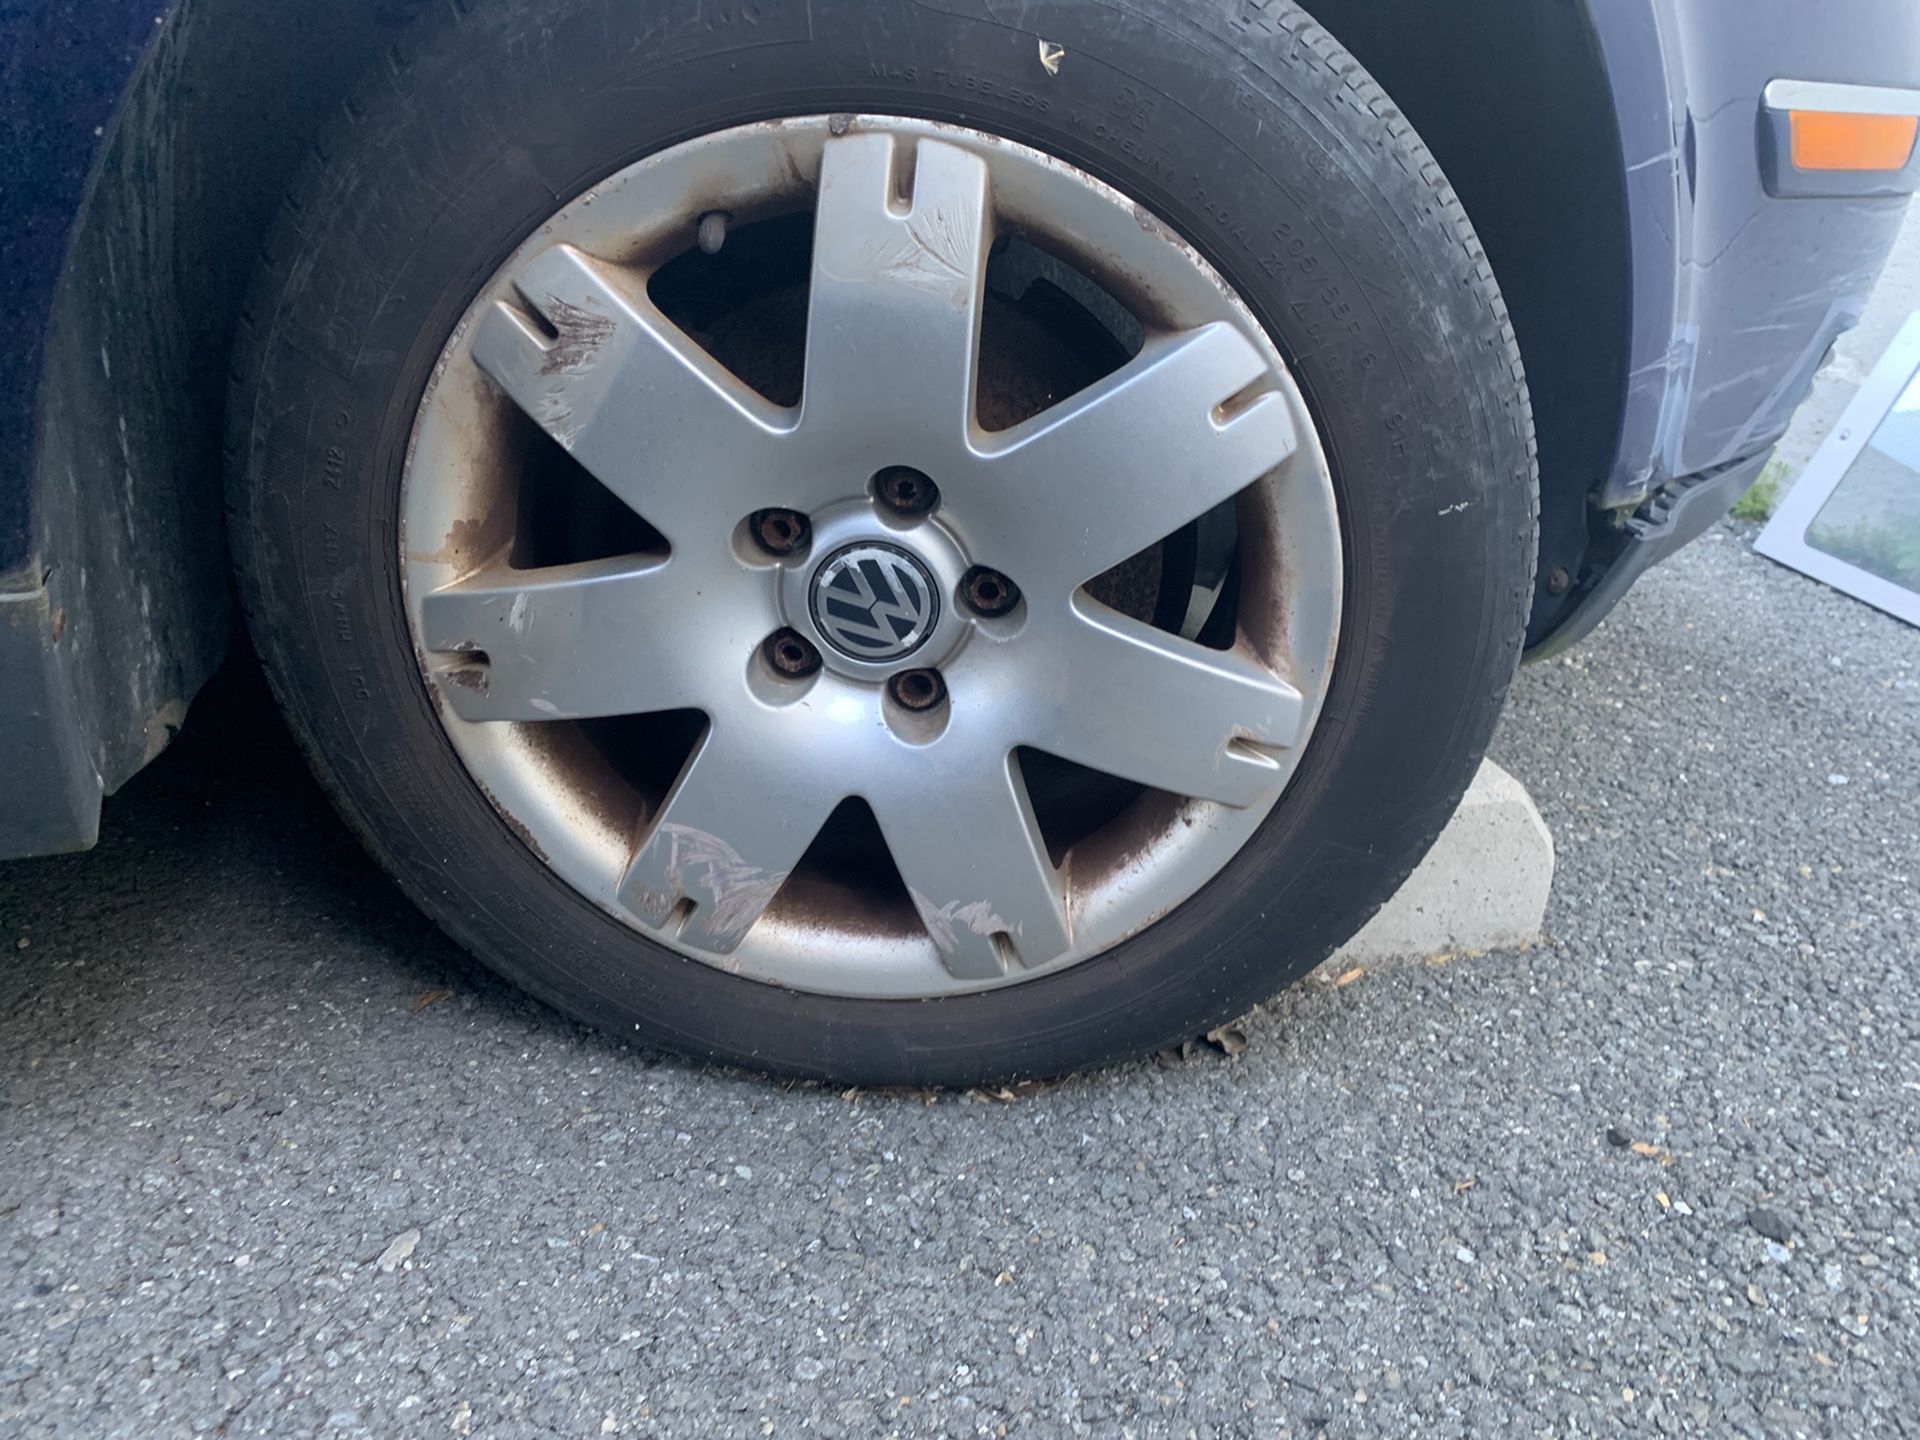 5x112 Volkswagen wheels and tires